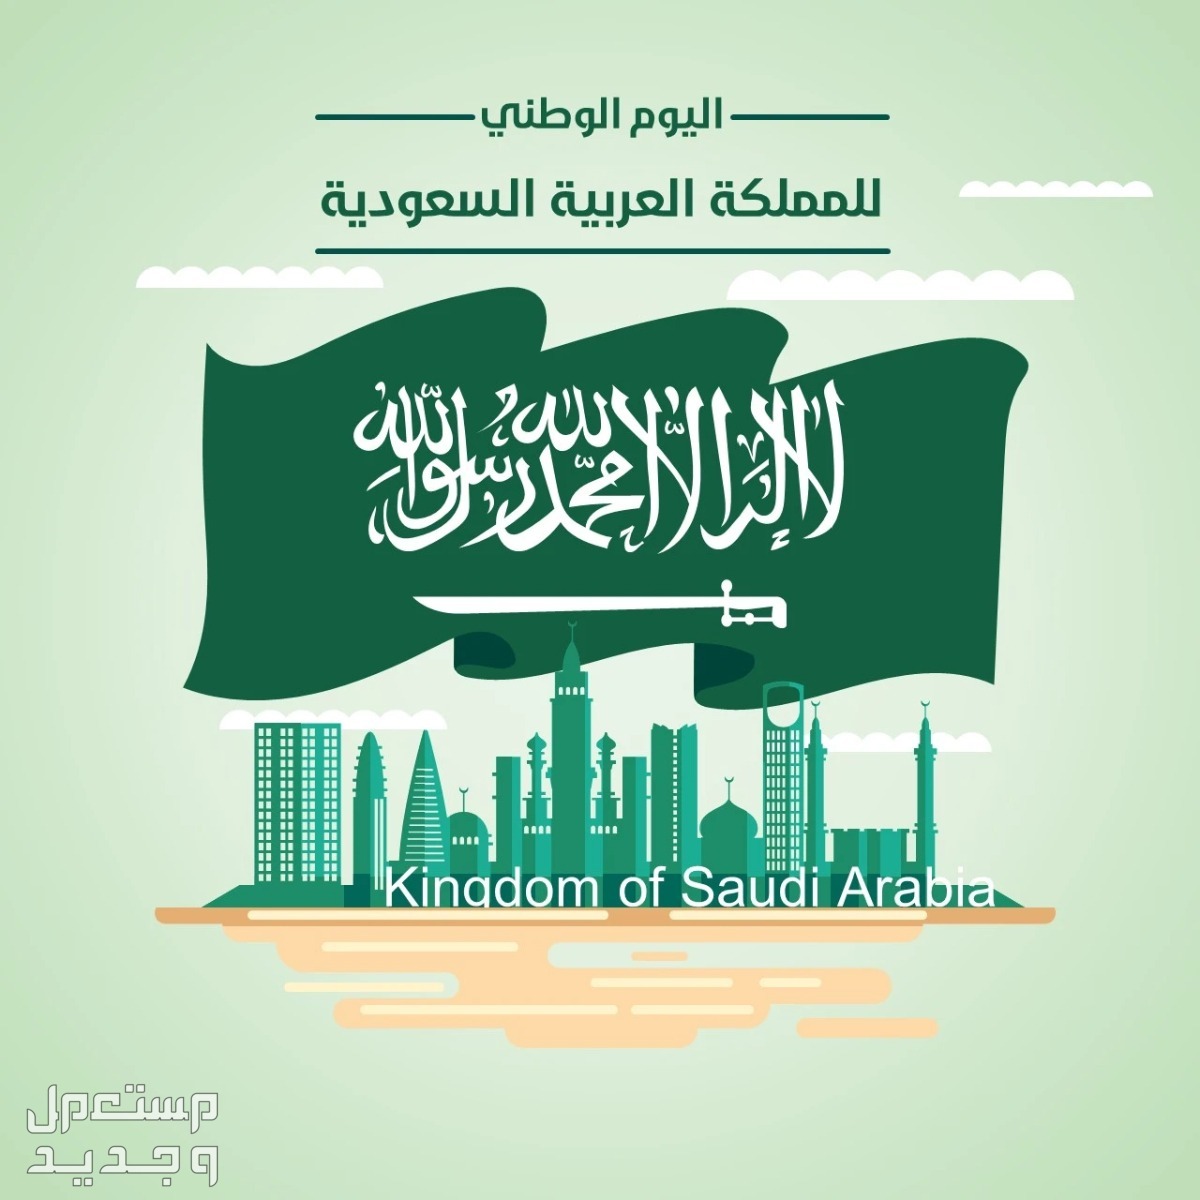 عبارات قصيرة عن اليوم الوطني السعودي 1446 في اليَمَن عبارات قصيرة عن اليوم الوطني السعودي 1446